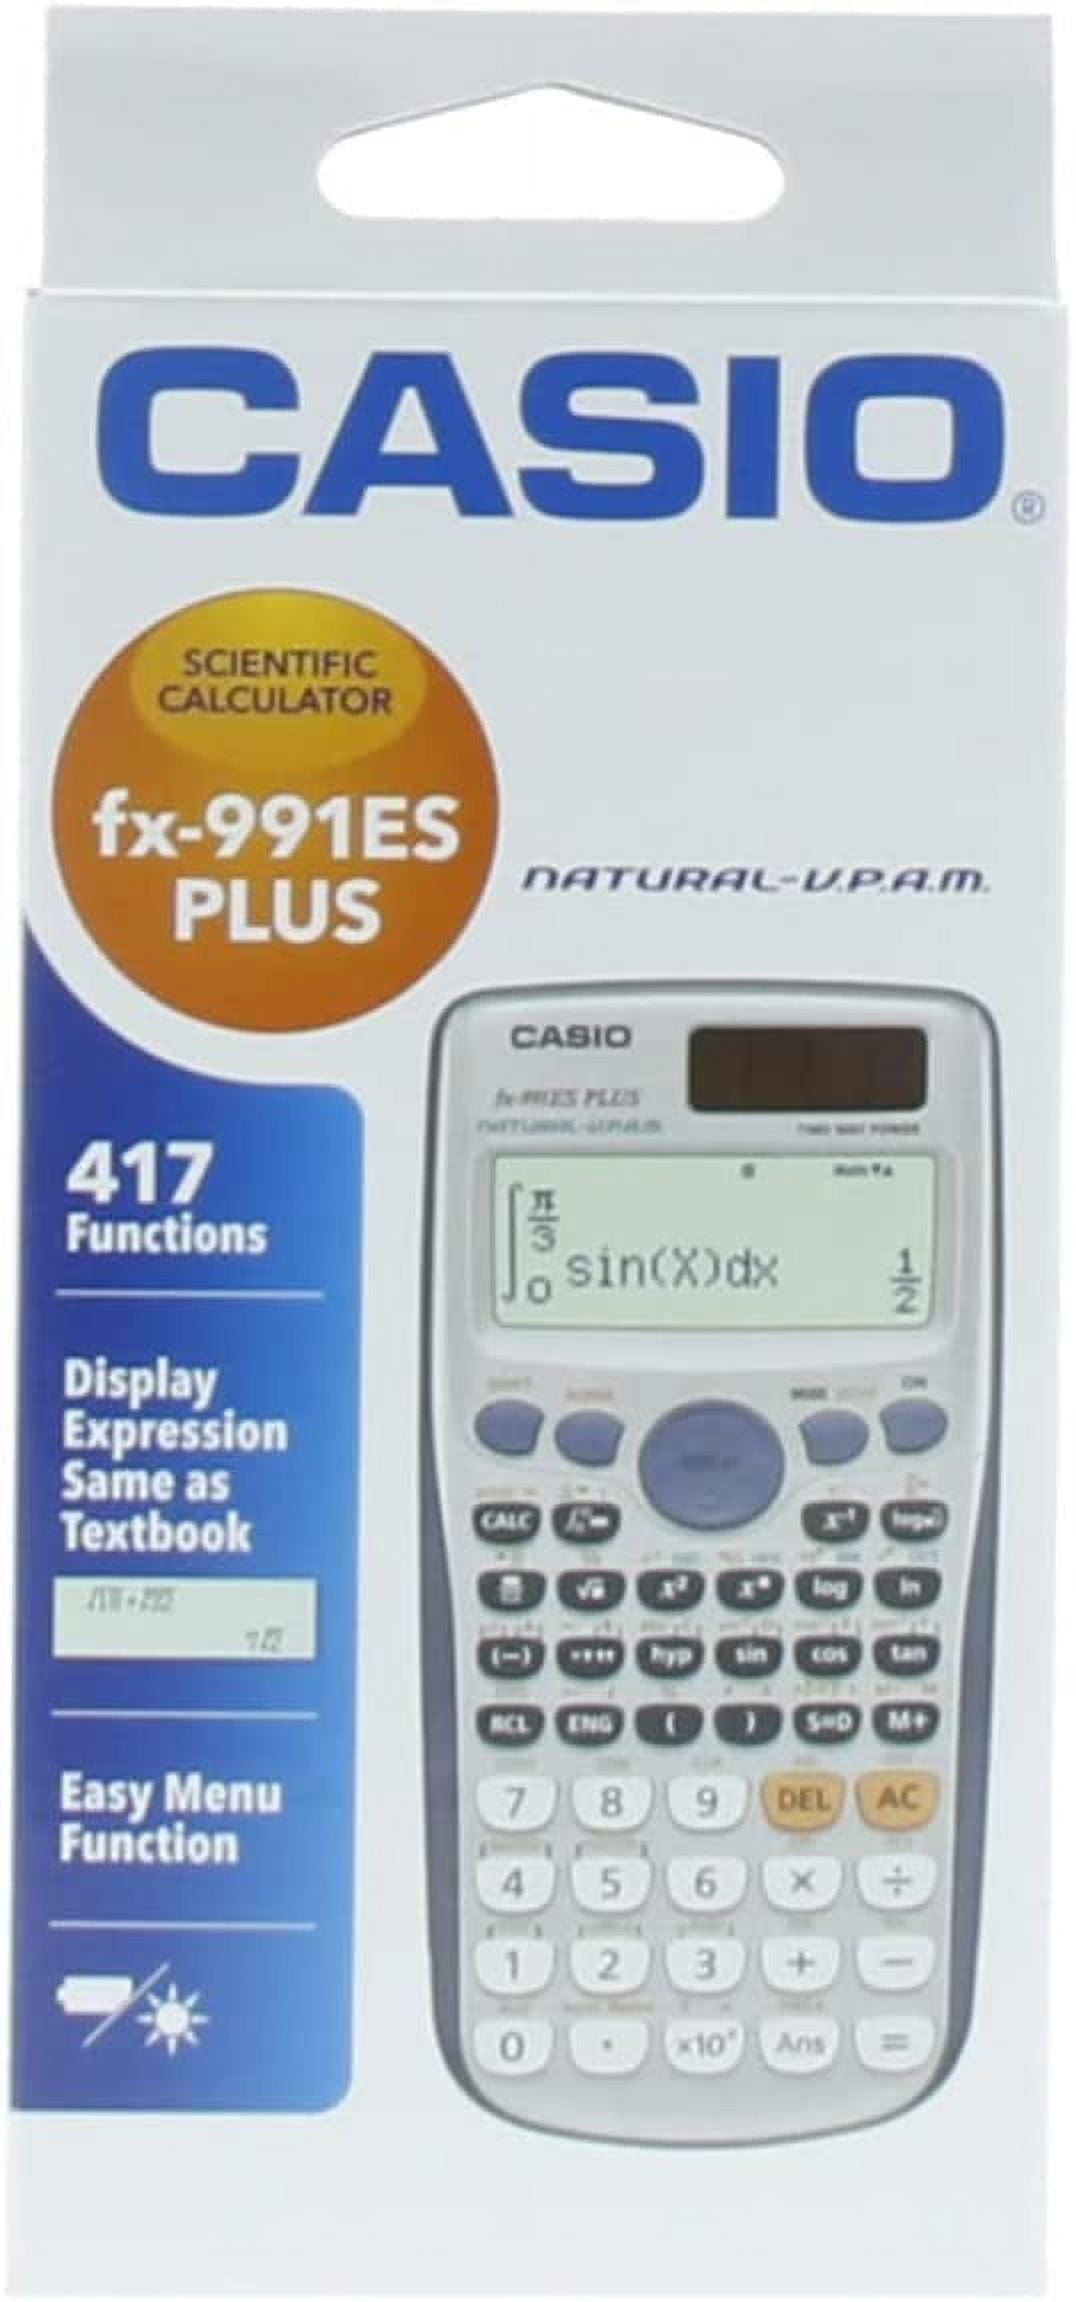 CASIO - FX-991ESPLUS-2WETV - Calcolatrice scientifica fx-991es